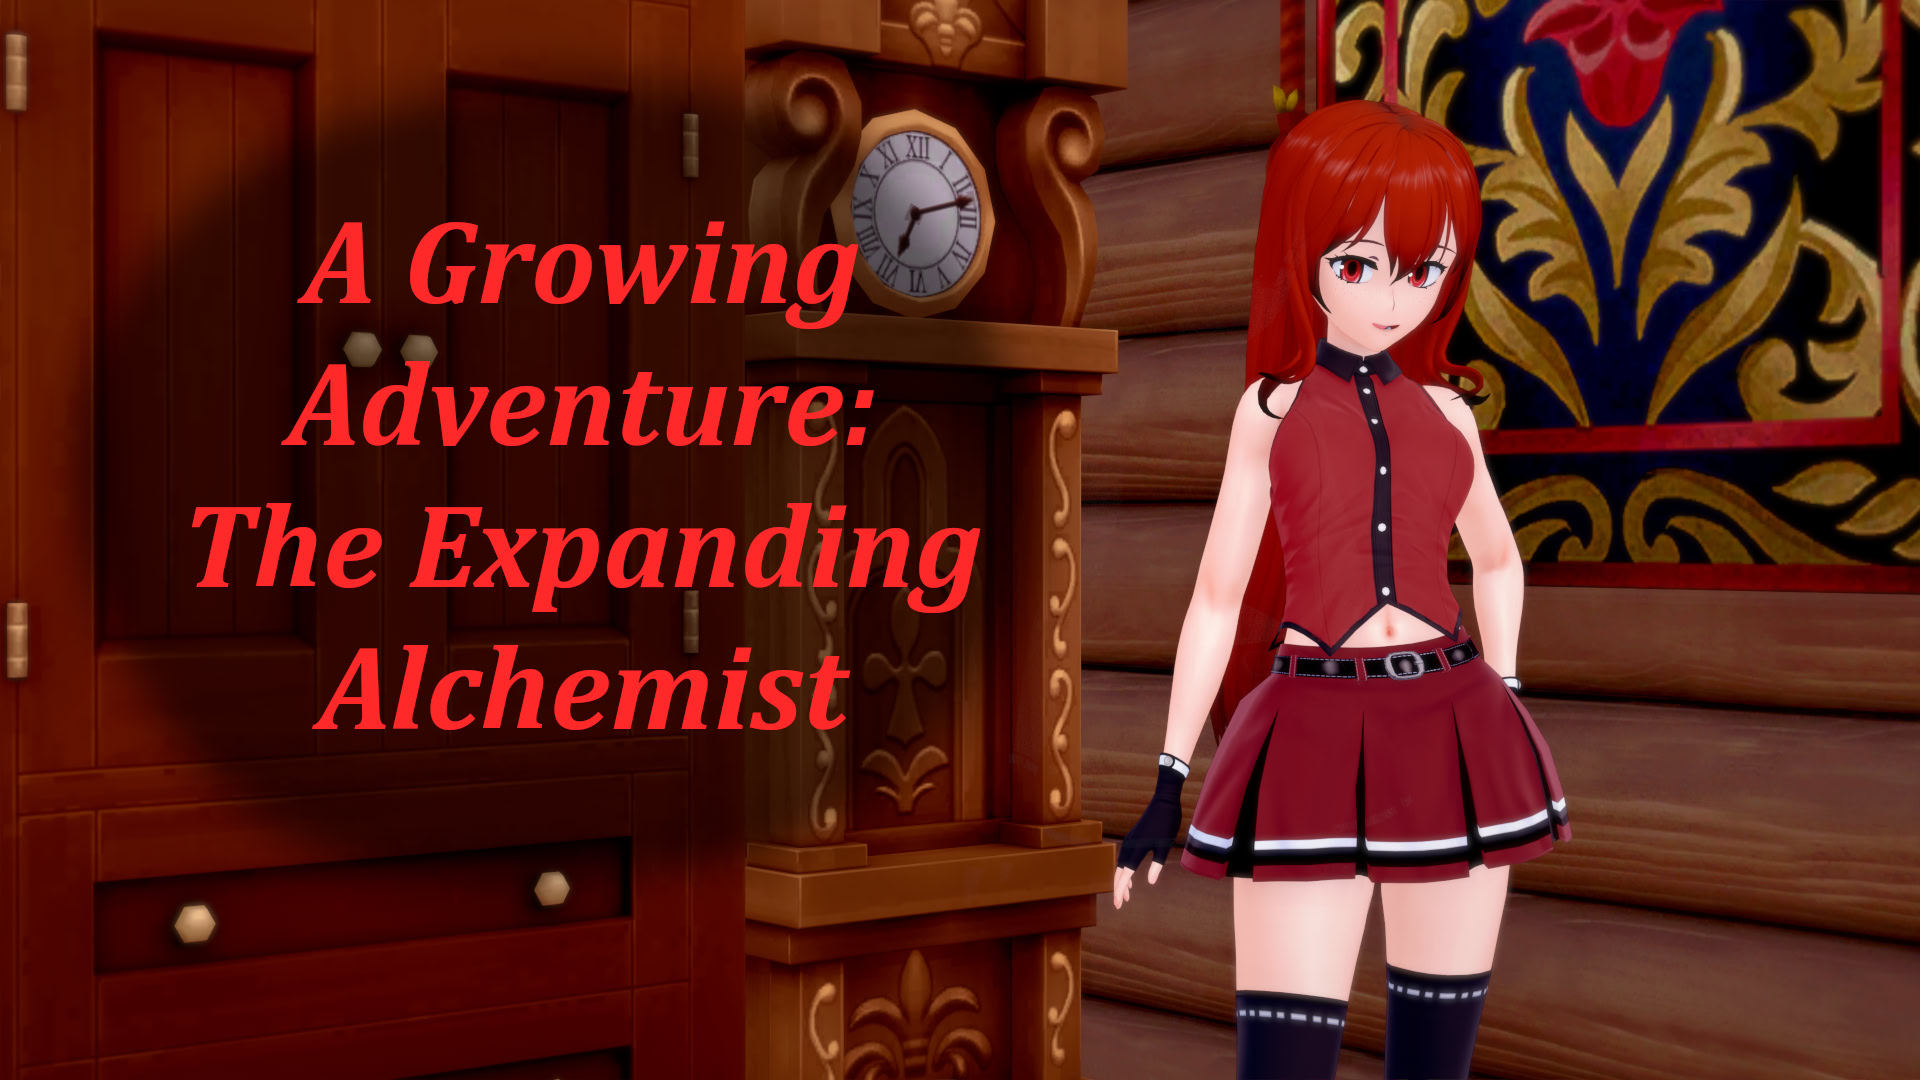 A Growing Adventure: The Expanding Alchemist